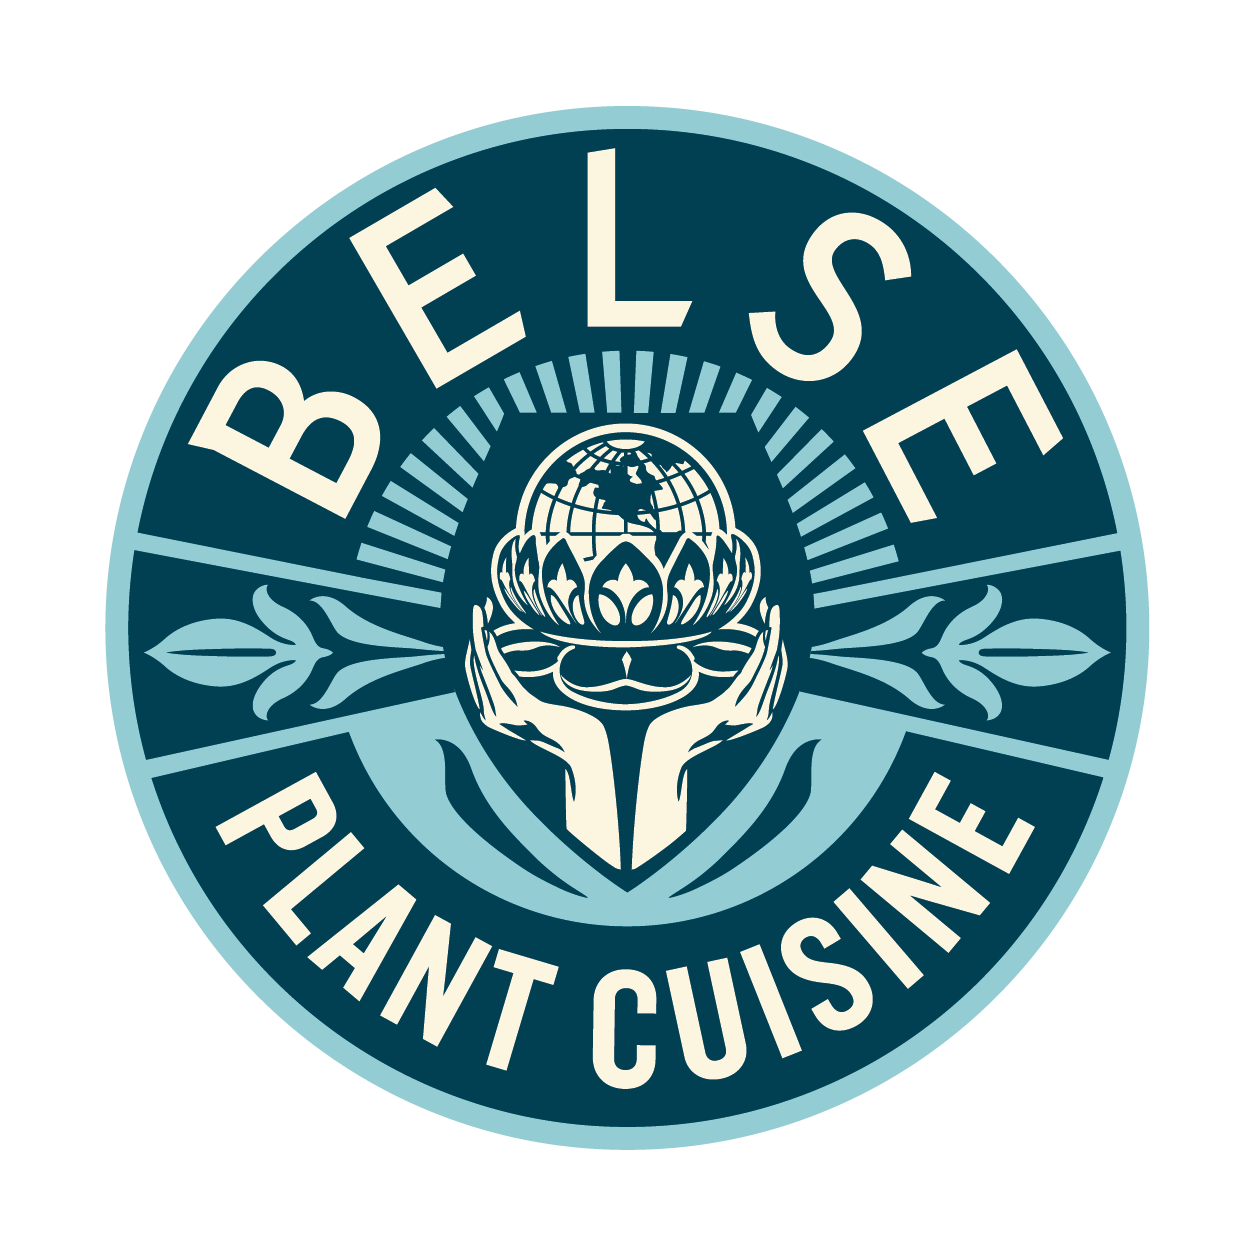 Belse Plant Cuisine  265 Bowery